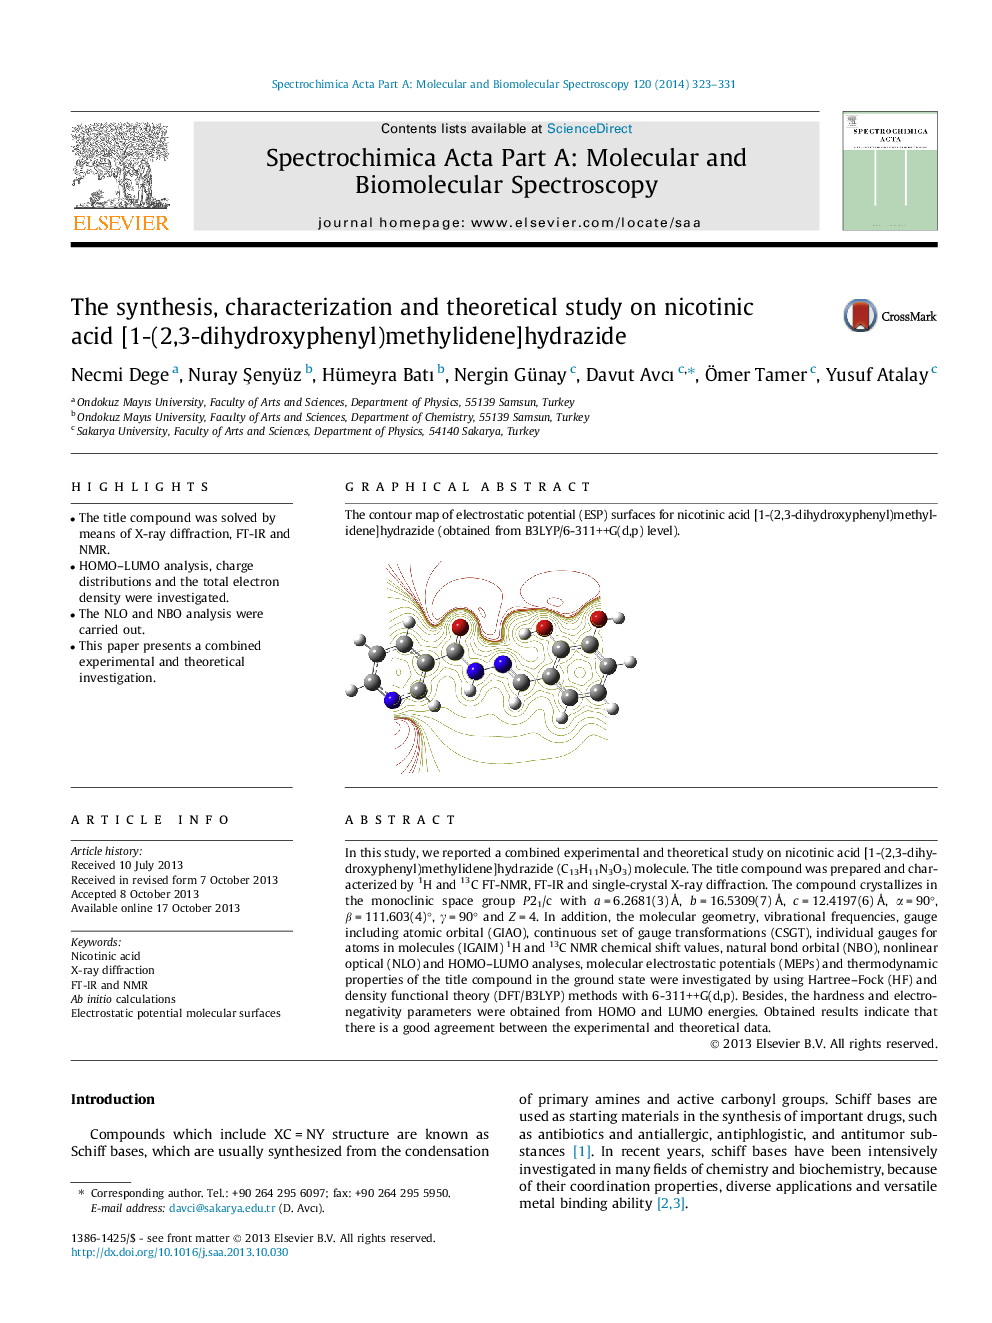 سنتز، خصوصیات و مطالعات نظری بر اسید نیکوتینیک [1- (2،3-دی هیدروکسی فنیل) متیلیدین] هیدرازید 